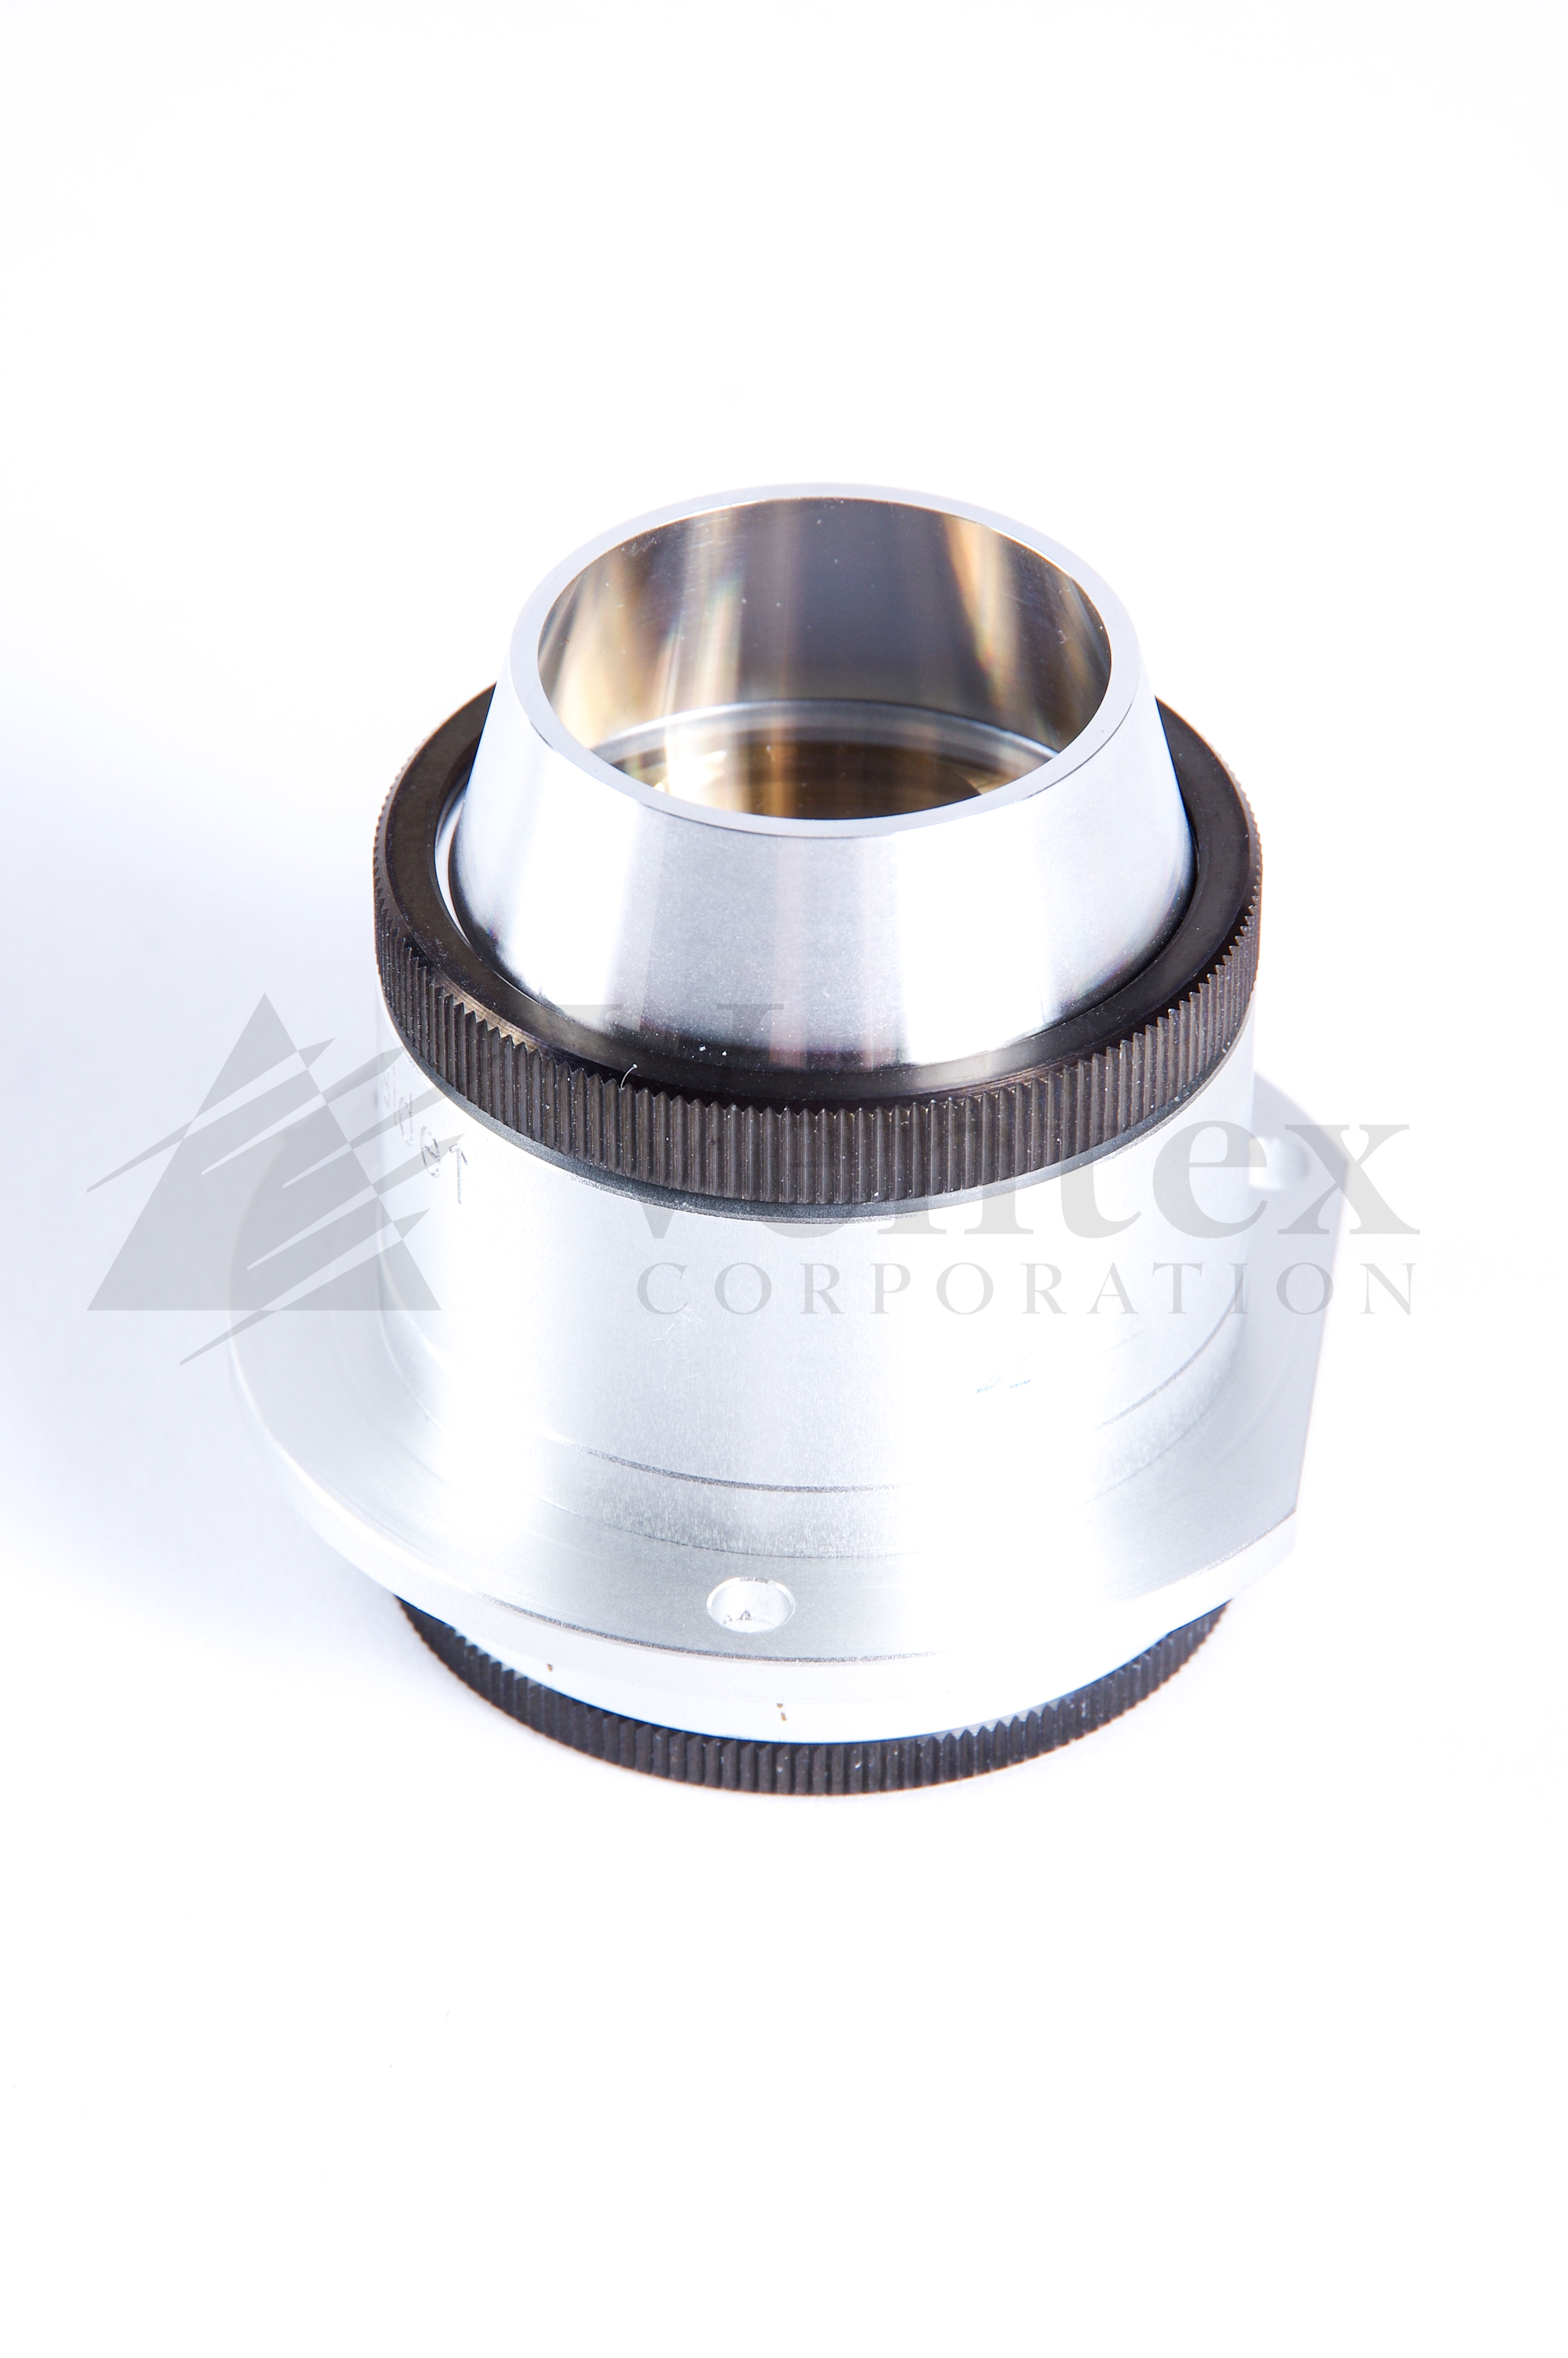 1st Condenser Lens - C (i3)